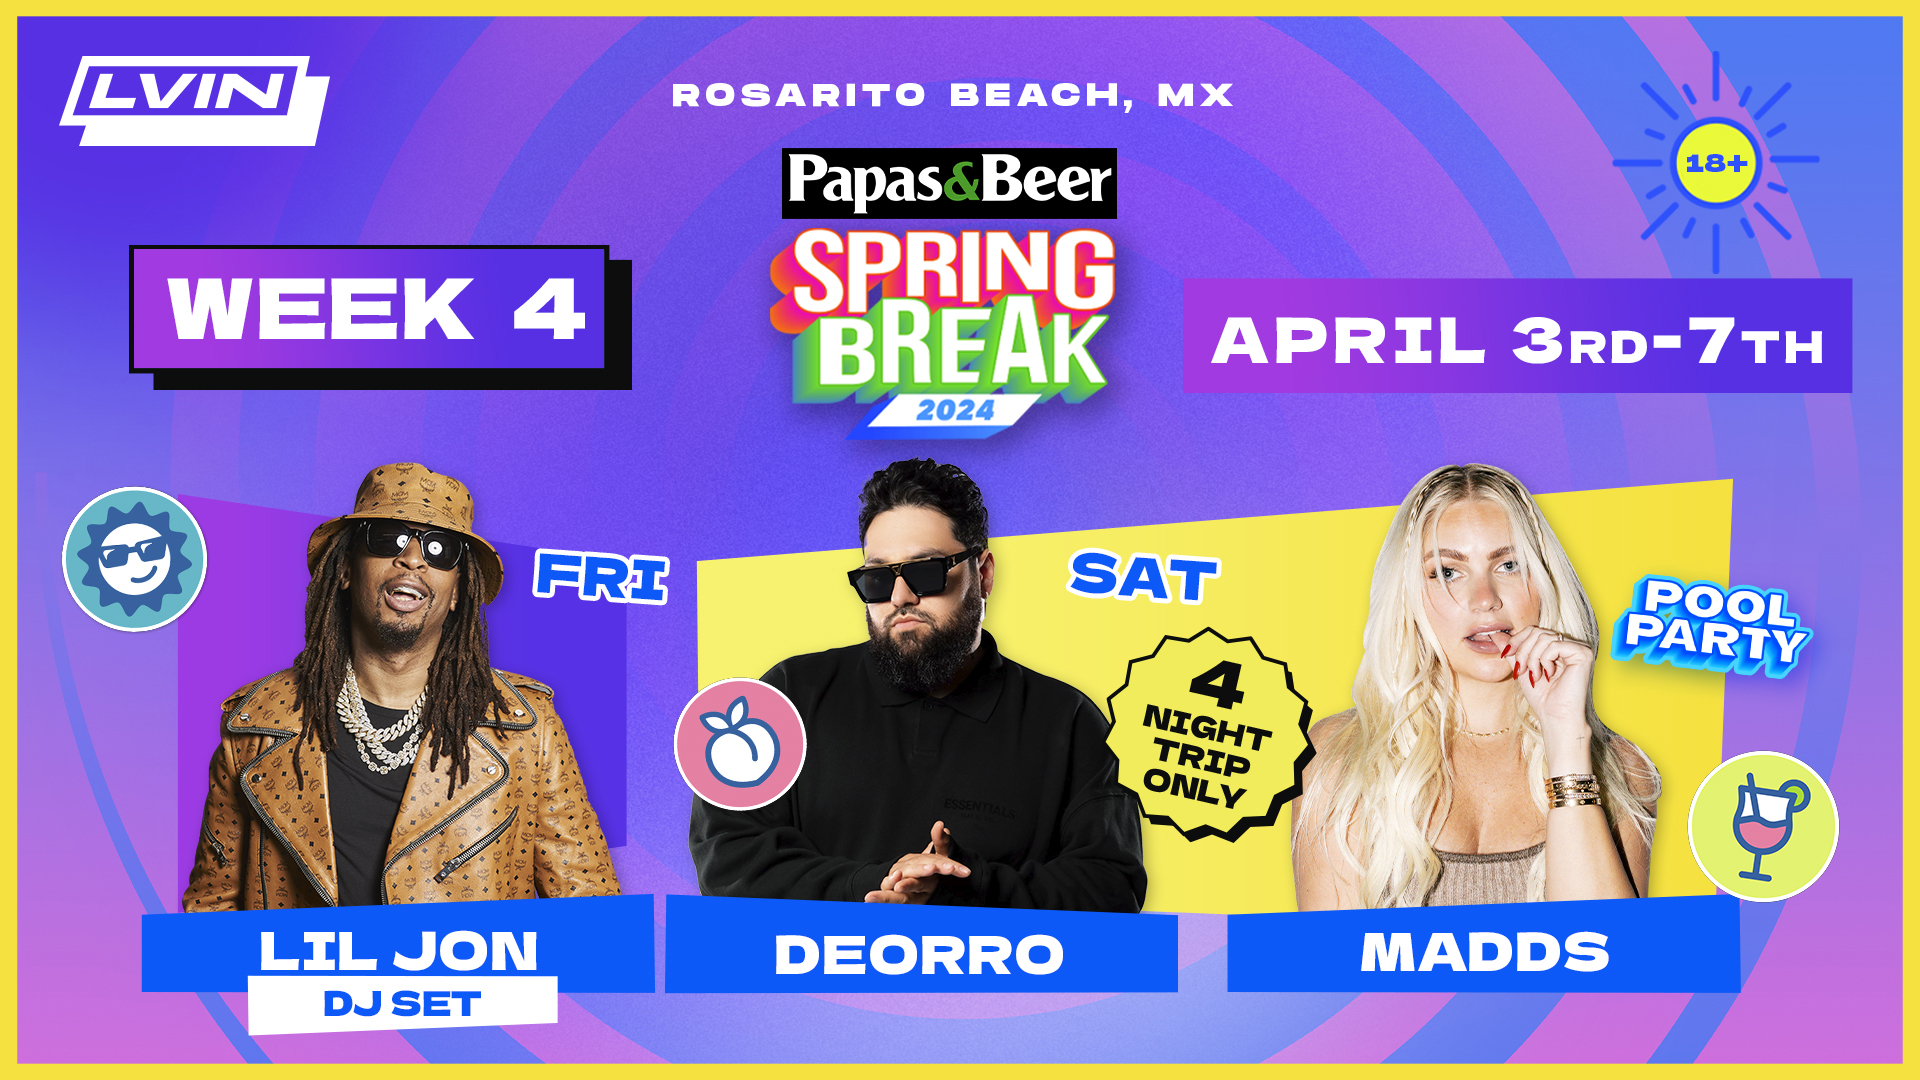 Rosarito Beach Spring Break 2024 Week 4 DJ Artist Lil Jon Deorro Madds Papas&Beer Concert LVIN